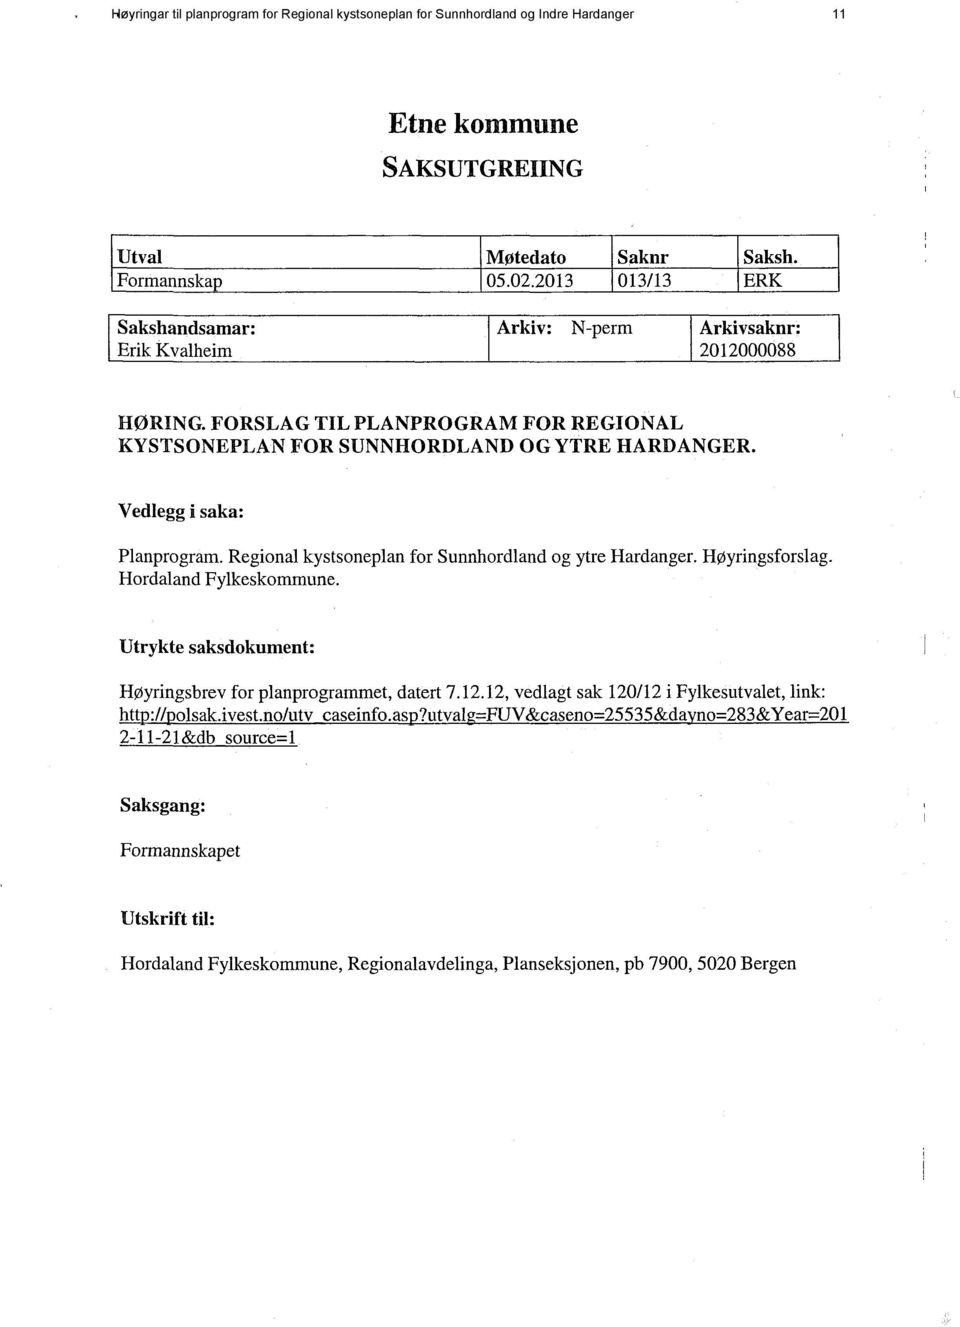 Vedlegg i saka: Planprogram. Regional kystsoneplan for Sunnhordland og ytre Hardanger. Høyringsforslag. Hordaland Fylkeskommune. Utrykte saksdokument: Høyringsbrev for planprogrammet, datert 7.12.